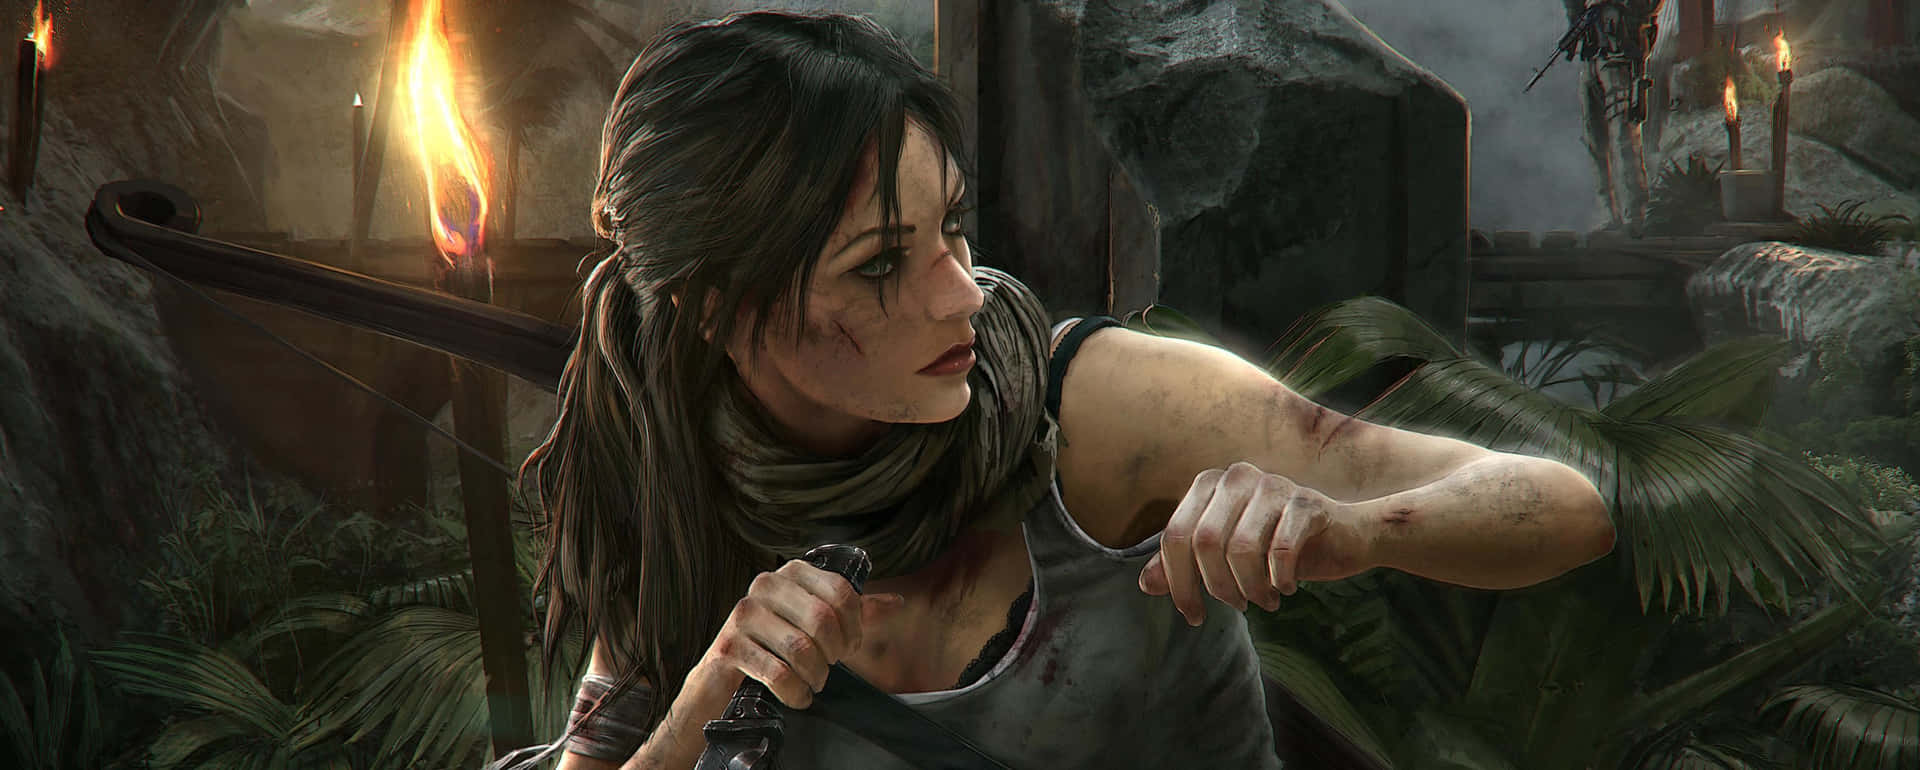 Sfondolara Croft In Combattimento 3440x1440p Rise Of The Tomb Raider